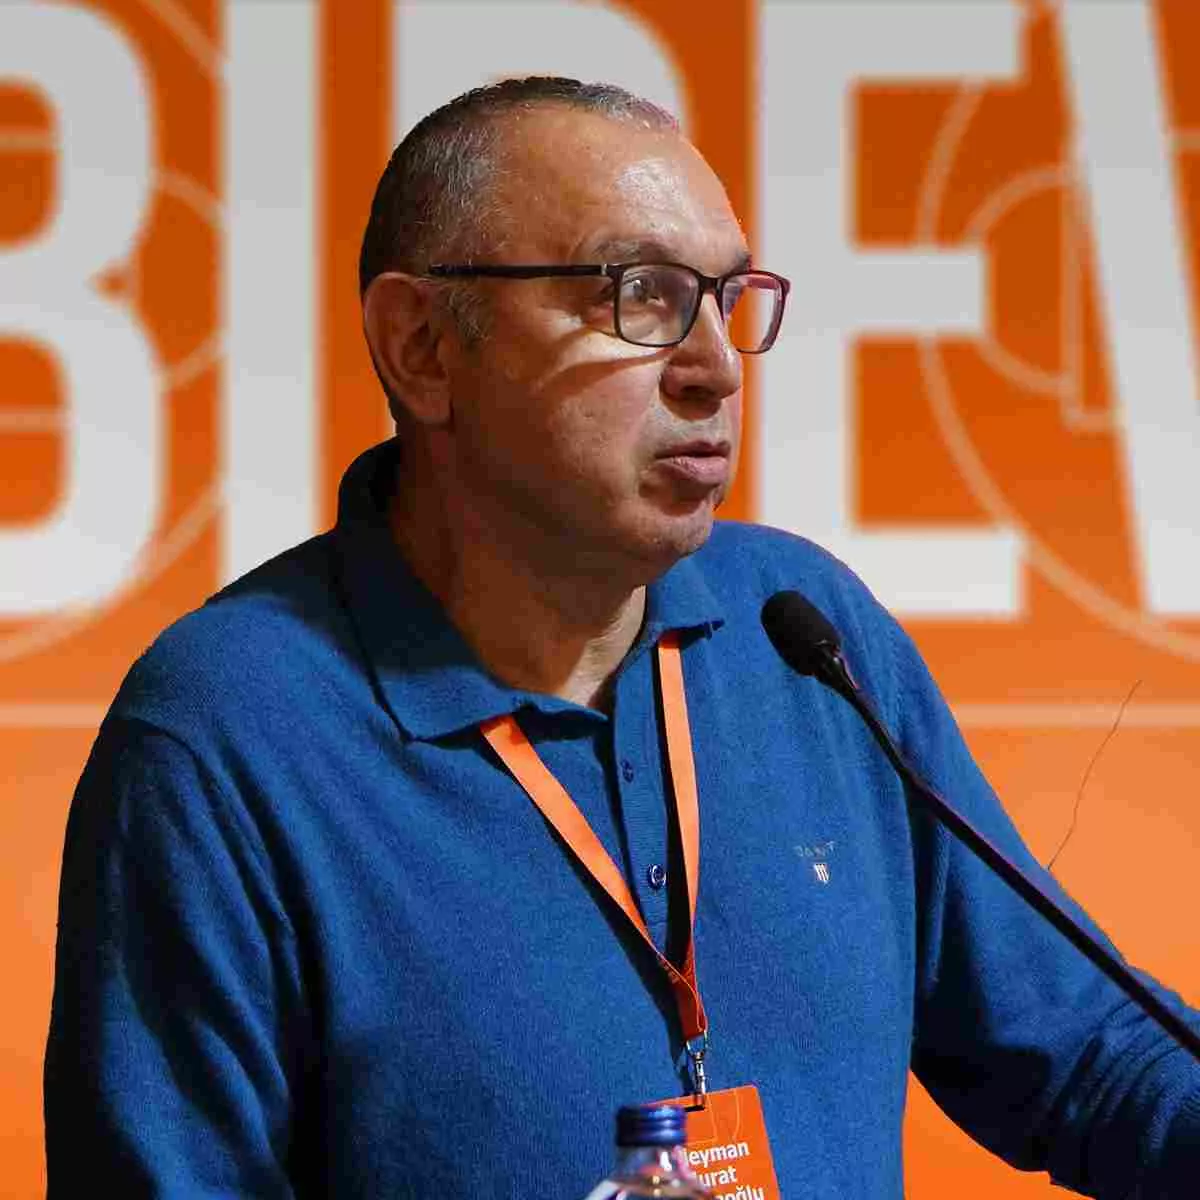 BİDEV - Basketbol için Destek ve Eğitim Vakfı Görsel Murat Yosmaoğlu